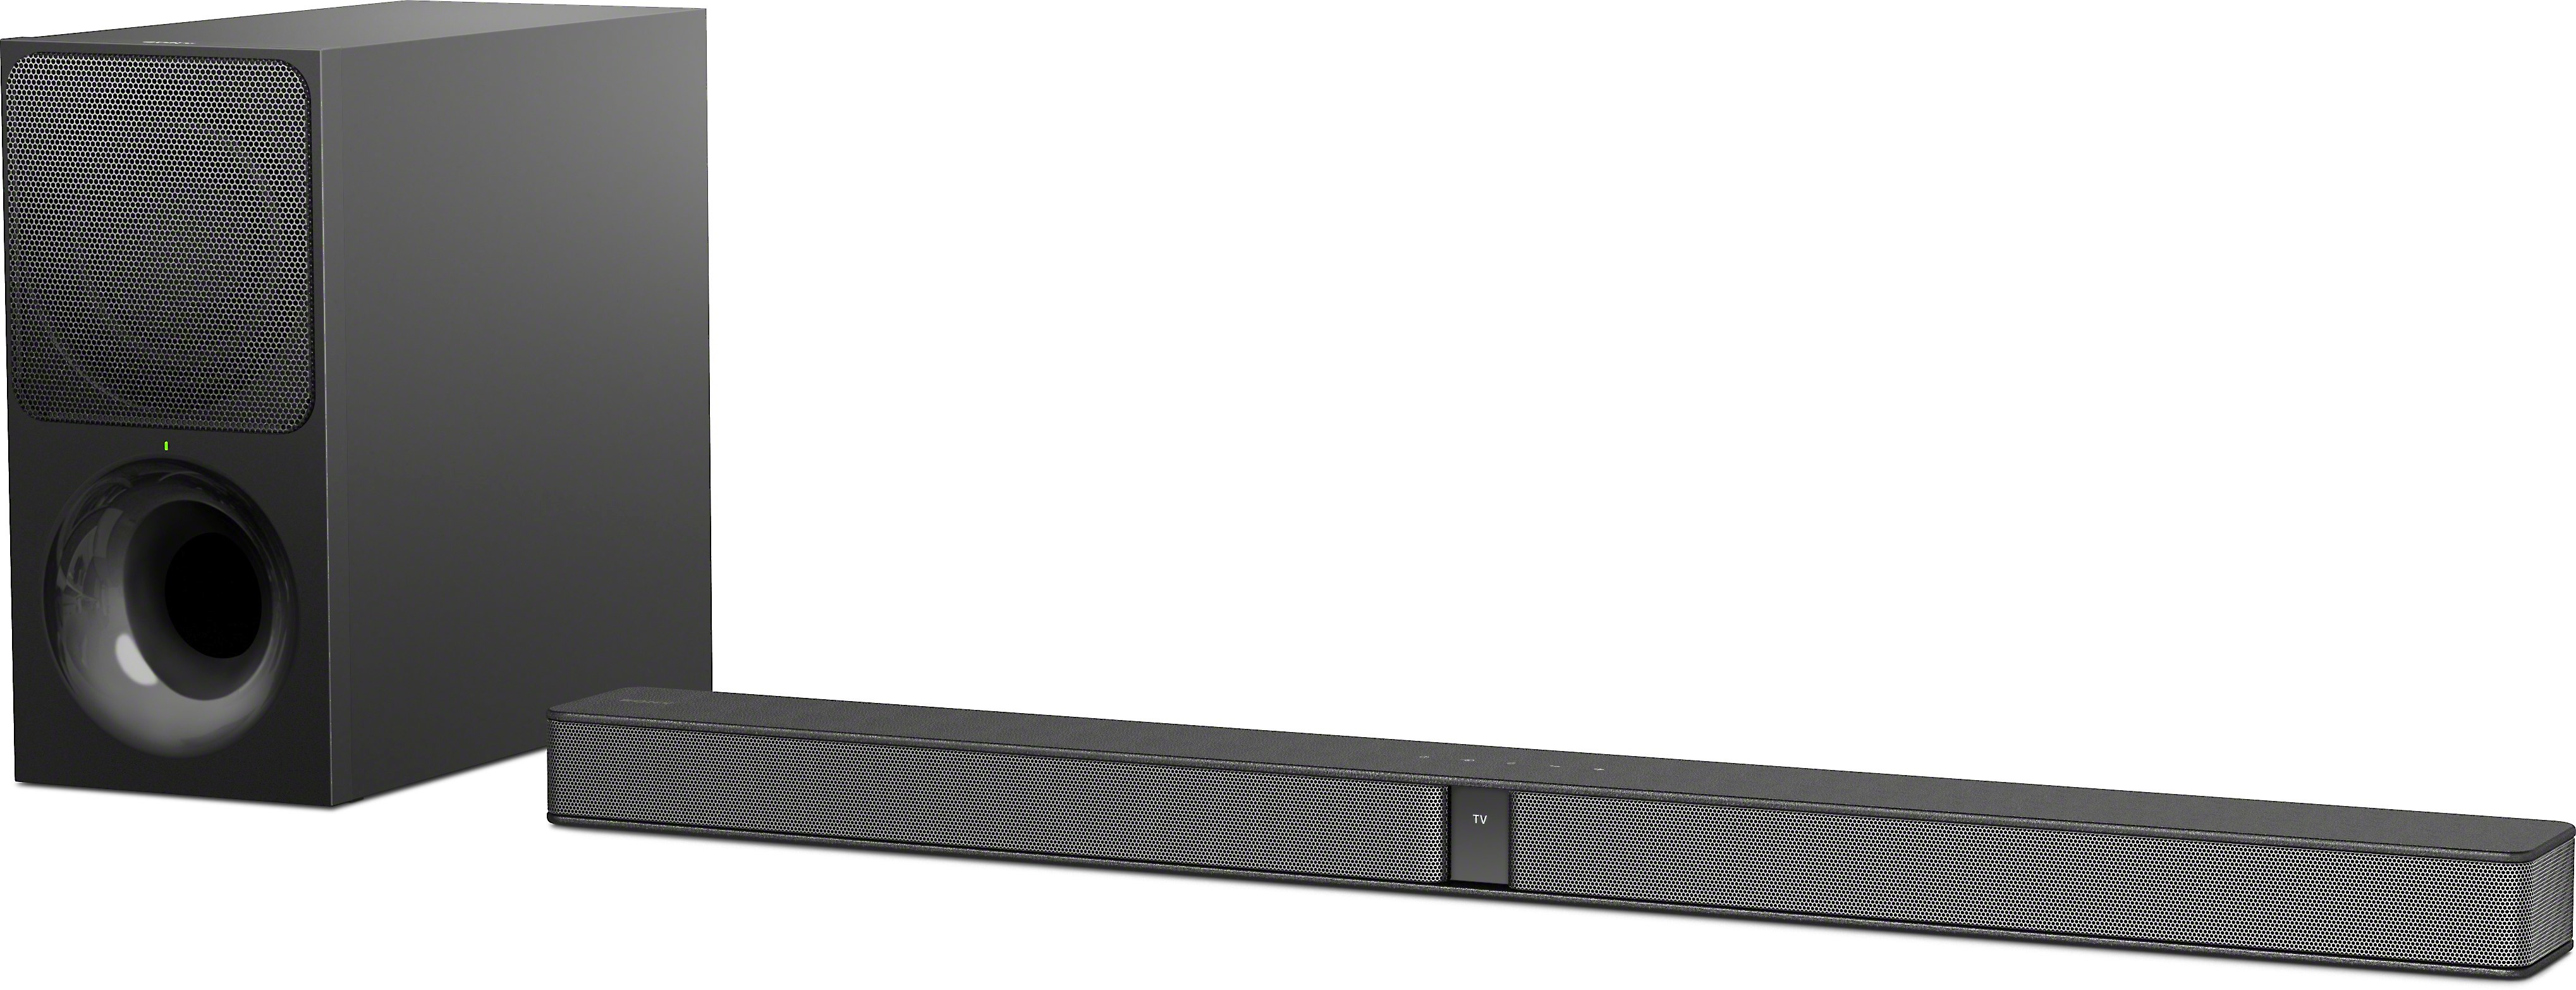 Sony HT-CT290 Slim sound bar with 